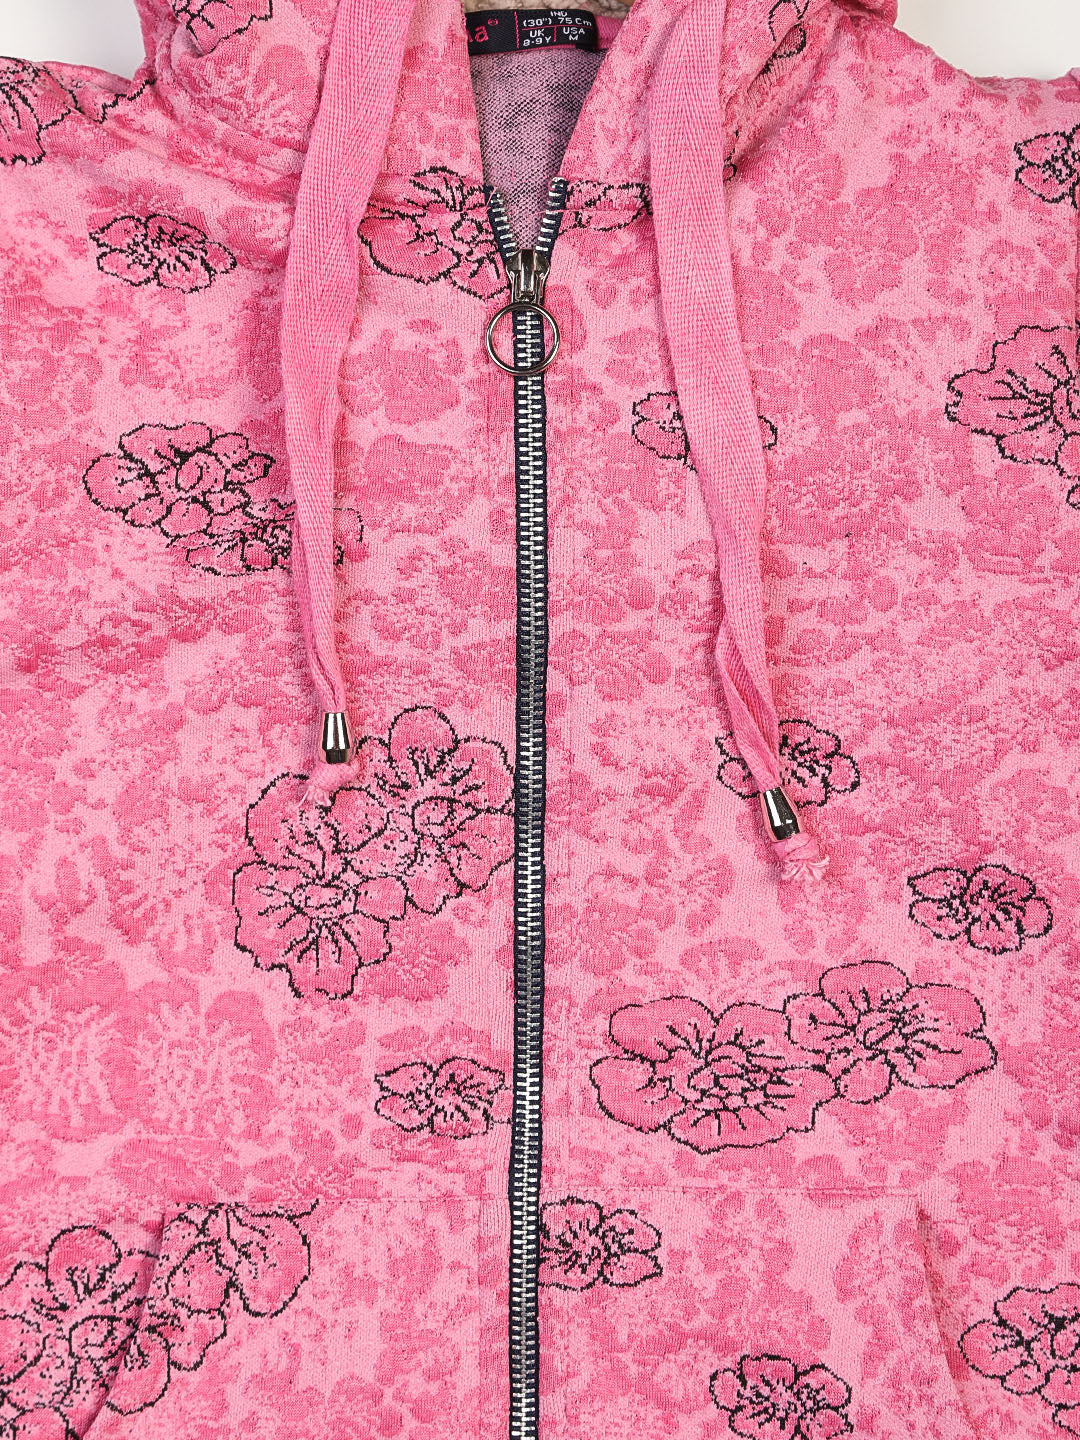 ZIAMA Girls Floral Printed Sweatshirt with Hoodie and Zip-Pink